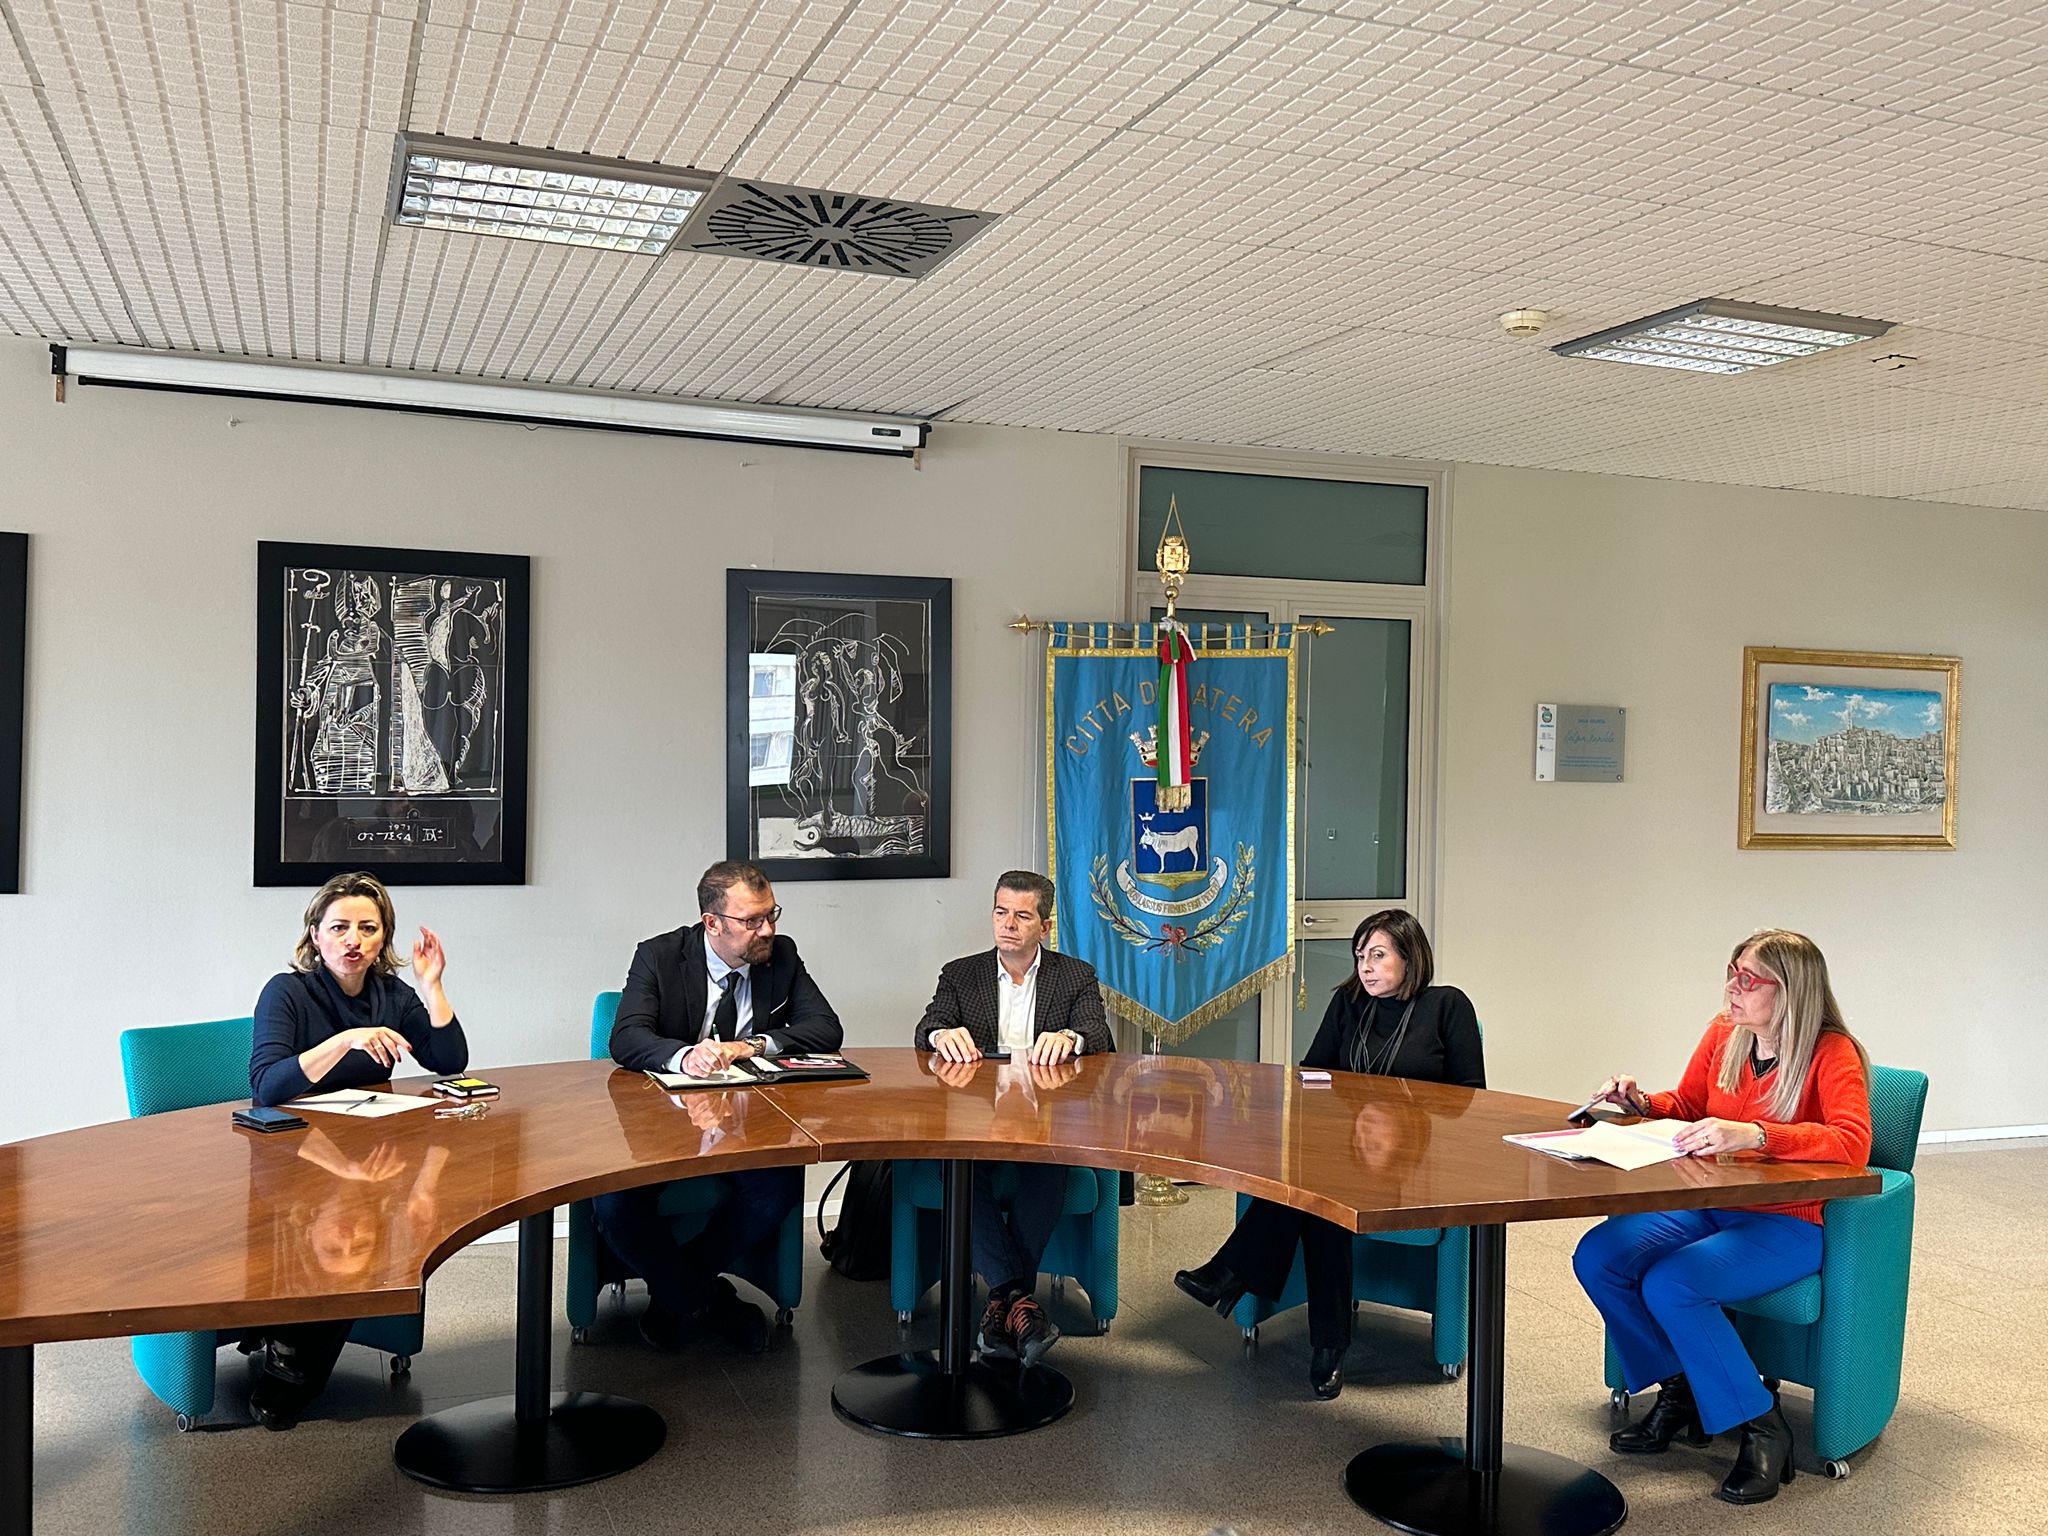 L’Amministrazione comunale incontra associazioni di categoria e operatori turistici, per condividere strategie e criticità sulle produzioni cinematografiche a Matera